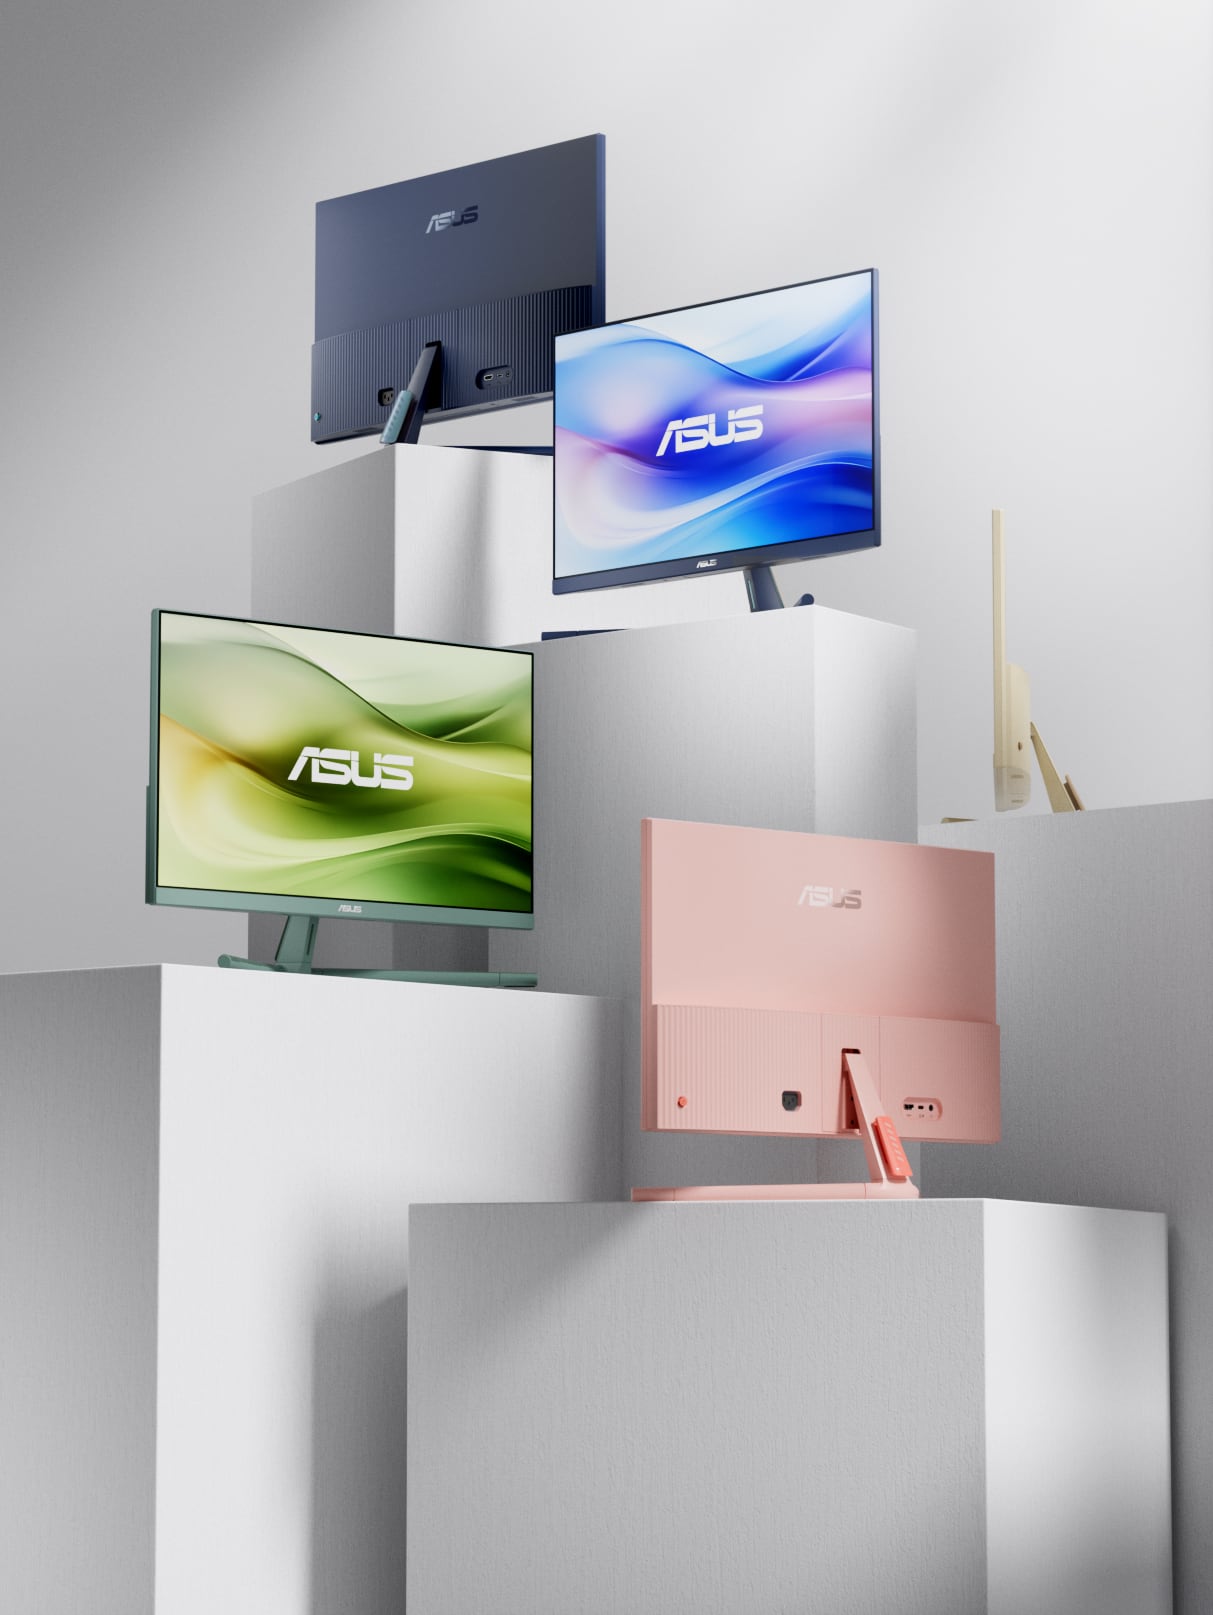 Abbildung zeigt die vier verfügbaren Farben für die VU-Monitorreihe